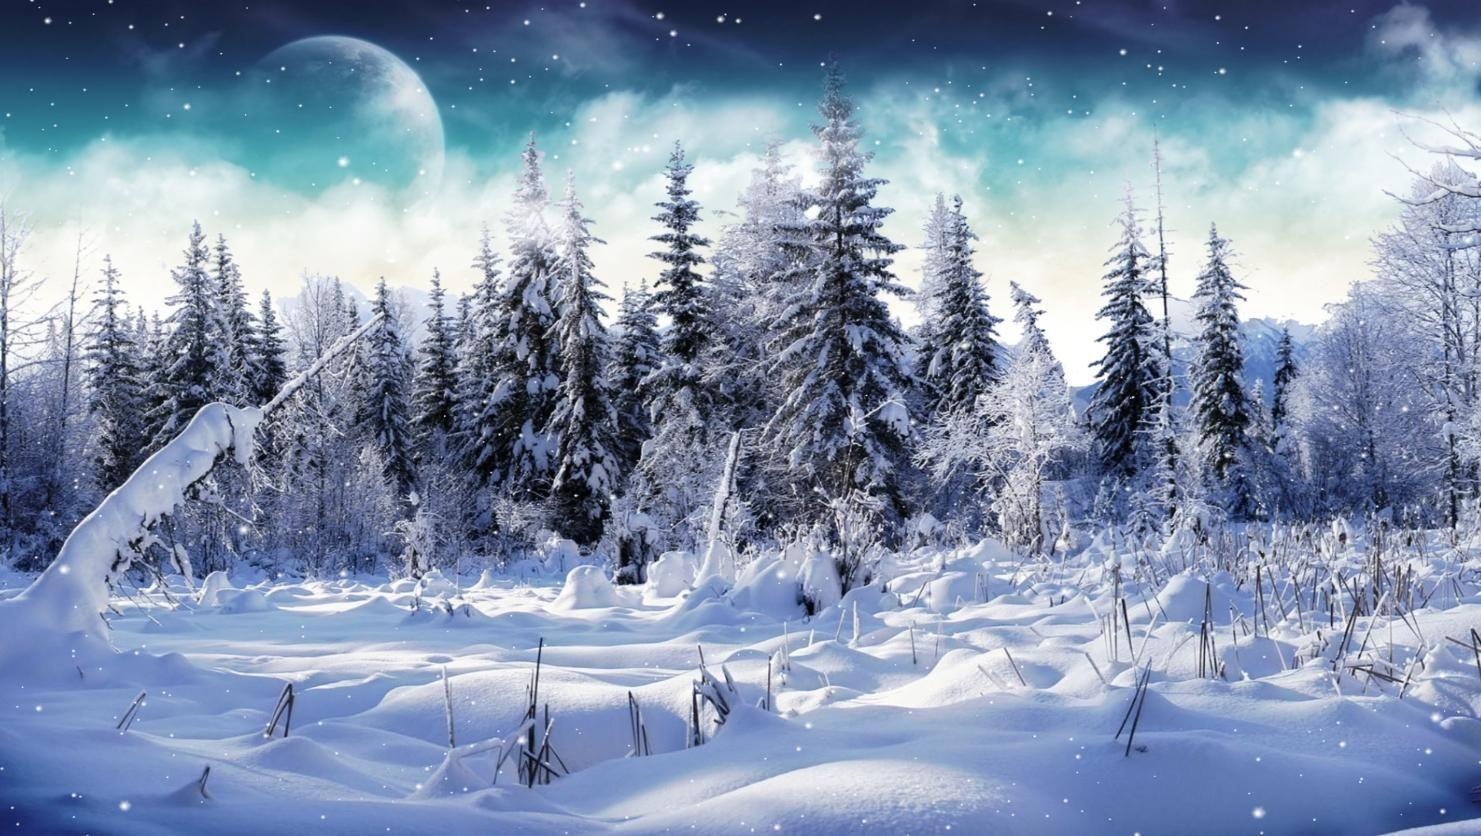 Free Microsoft Winter Scene. Download Cold Winter Animated Wallpaper. DesktopAnimated.com. Winter scenery, Winter landscape, Winter picture